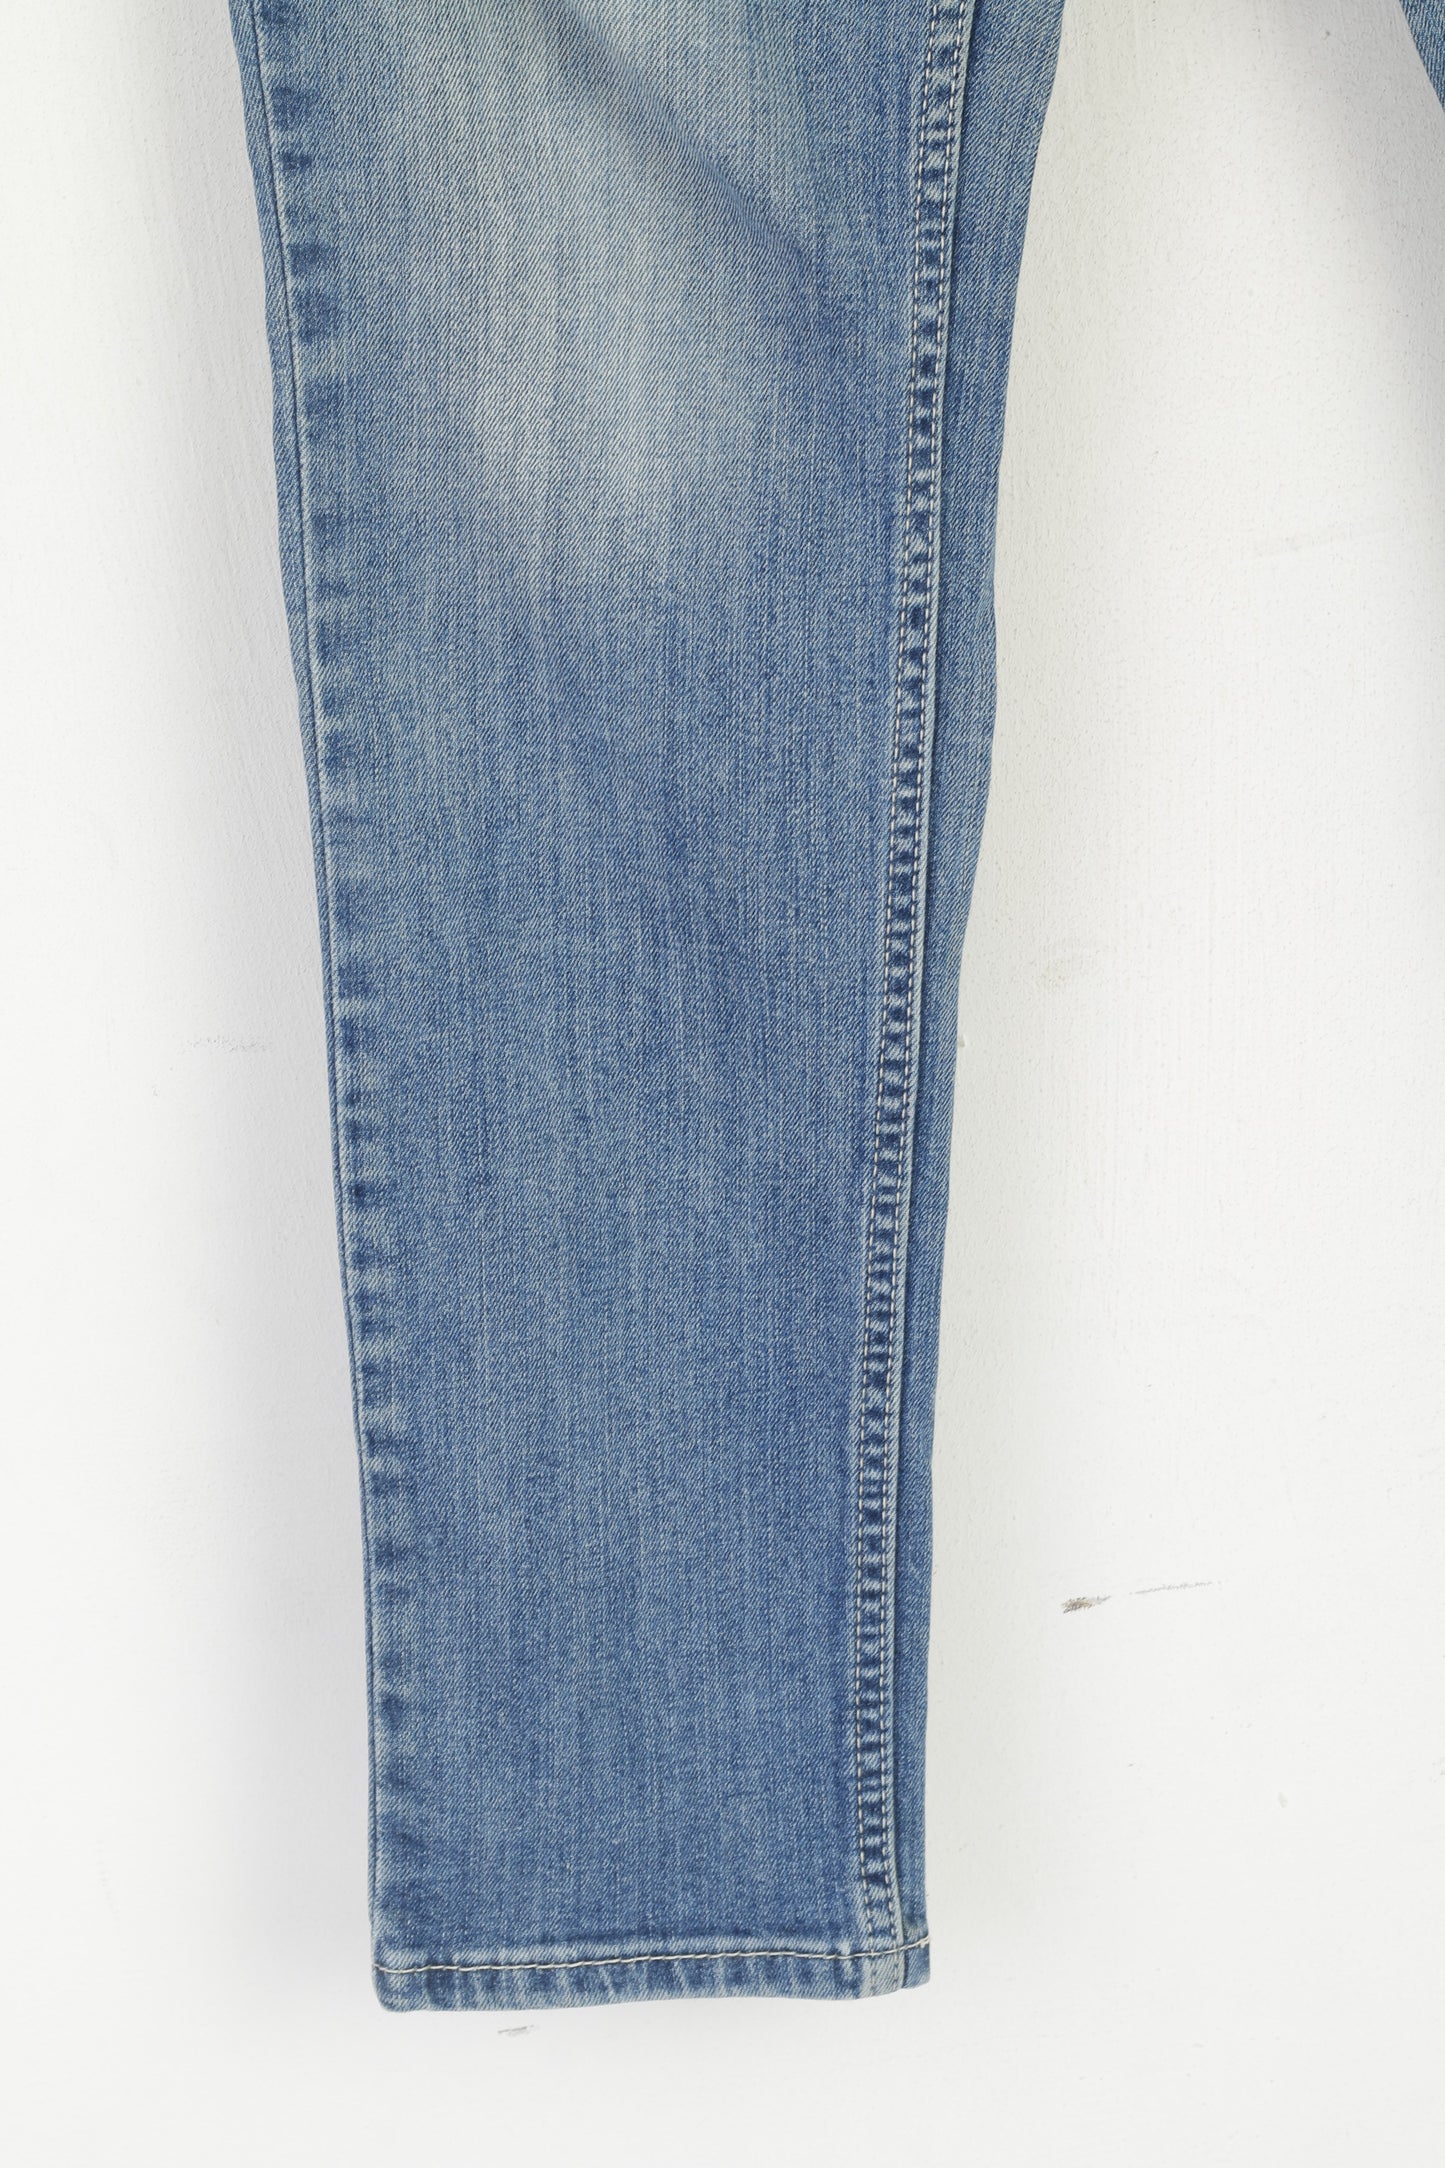 Levi's Demi Curve Women 28 Jeans Trousers Blue Cotton Low Rise Skinny Pants